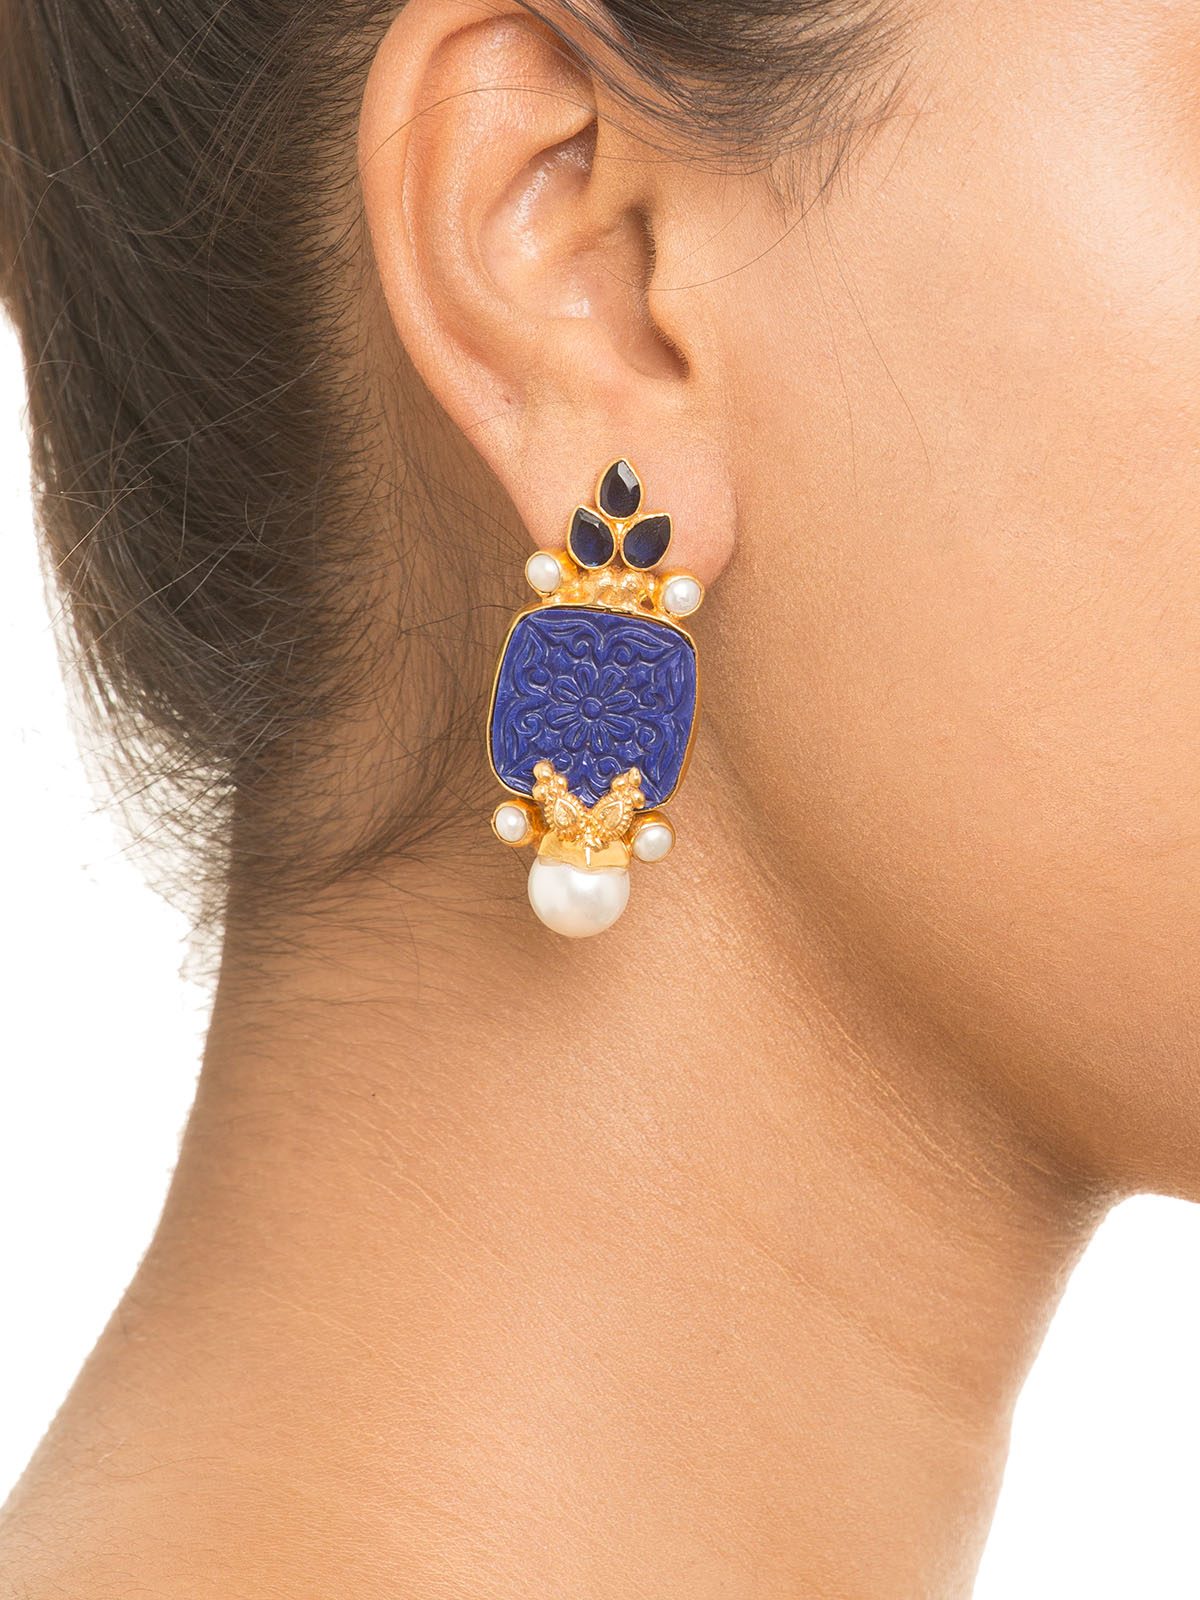 Buy Blue Carved Stone Earrings by Baroque Jewel Studio at Jivaana